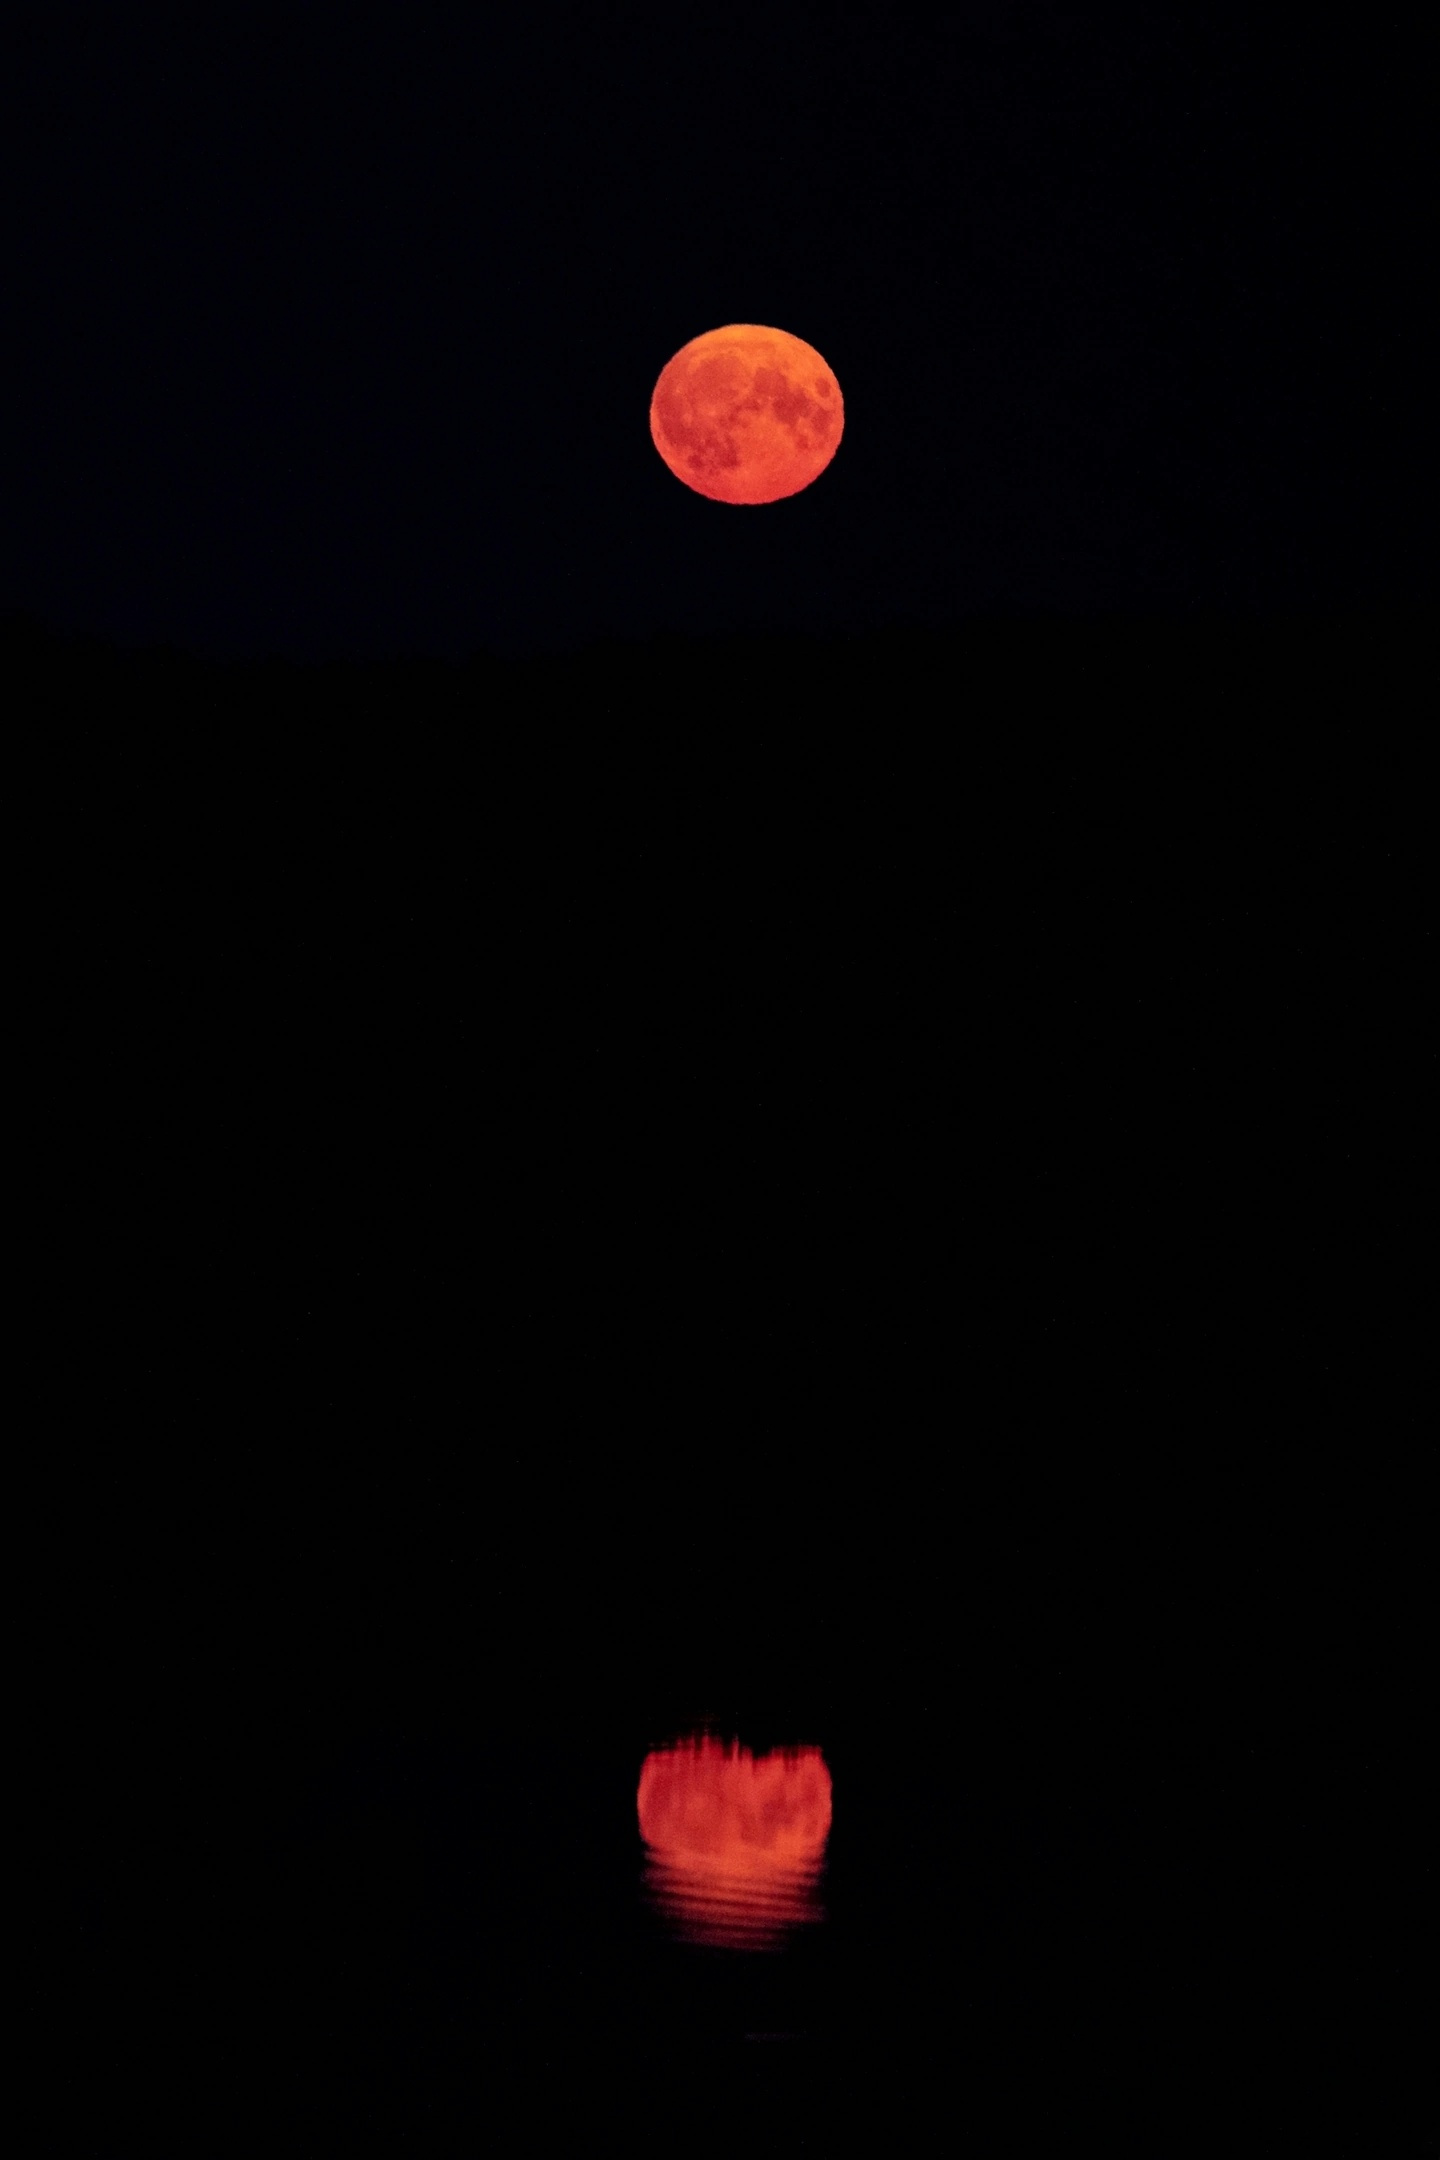 Луна окрасилась в нестандартный и непривычный ярко-красный цвет